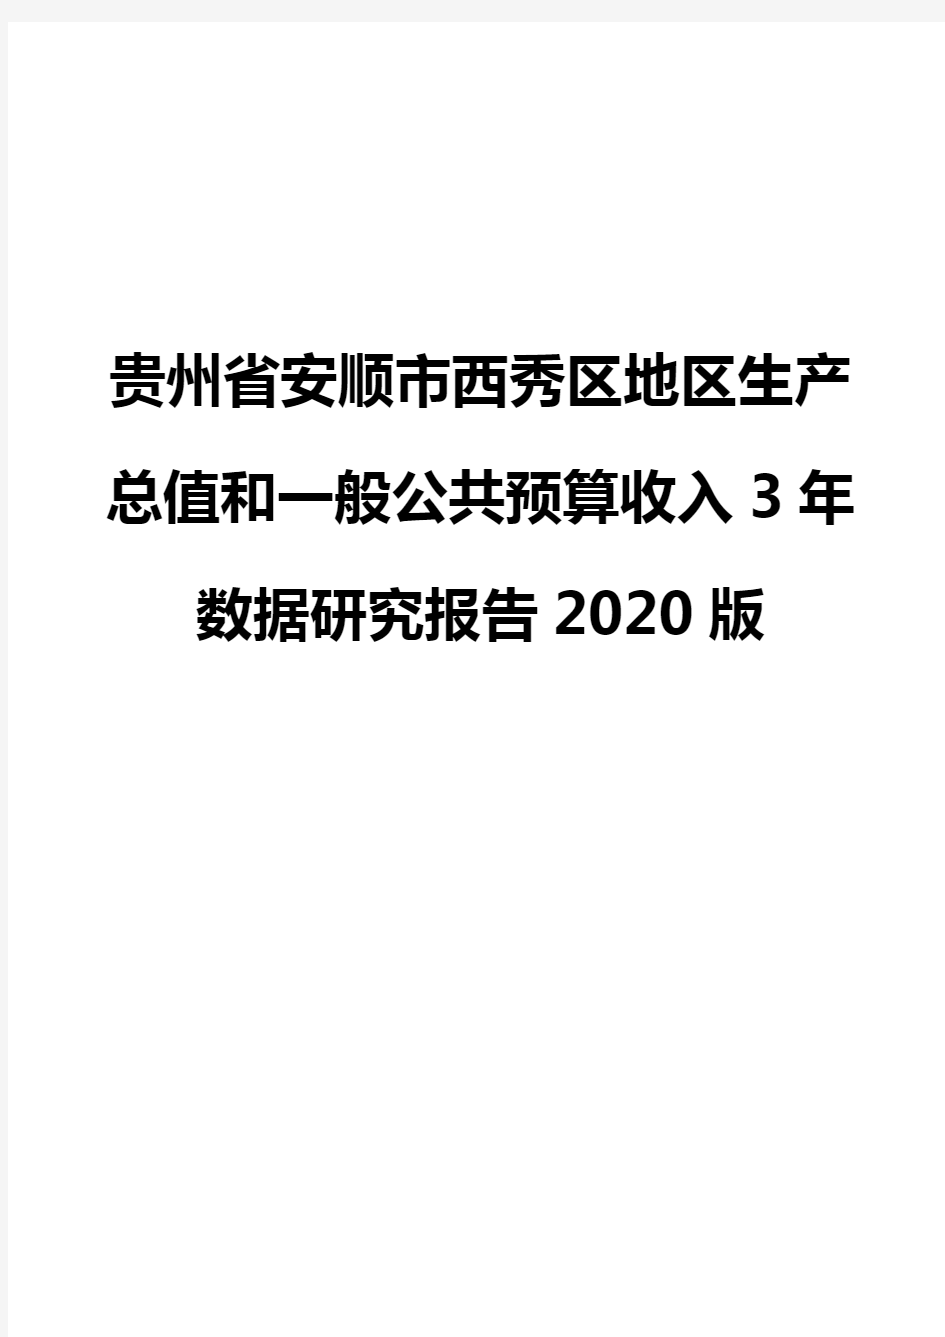 贵州省安顺市西秀区地区生产总值和一般公共预算收入3年数据研究报告2020版